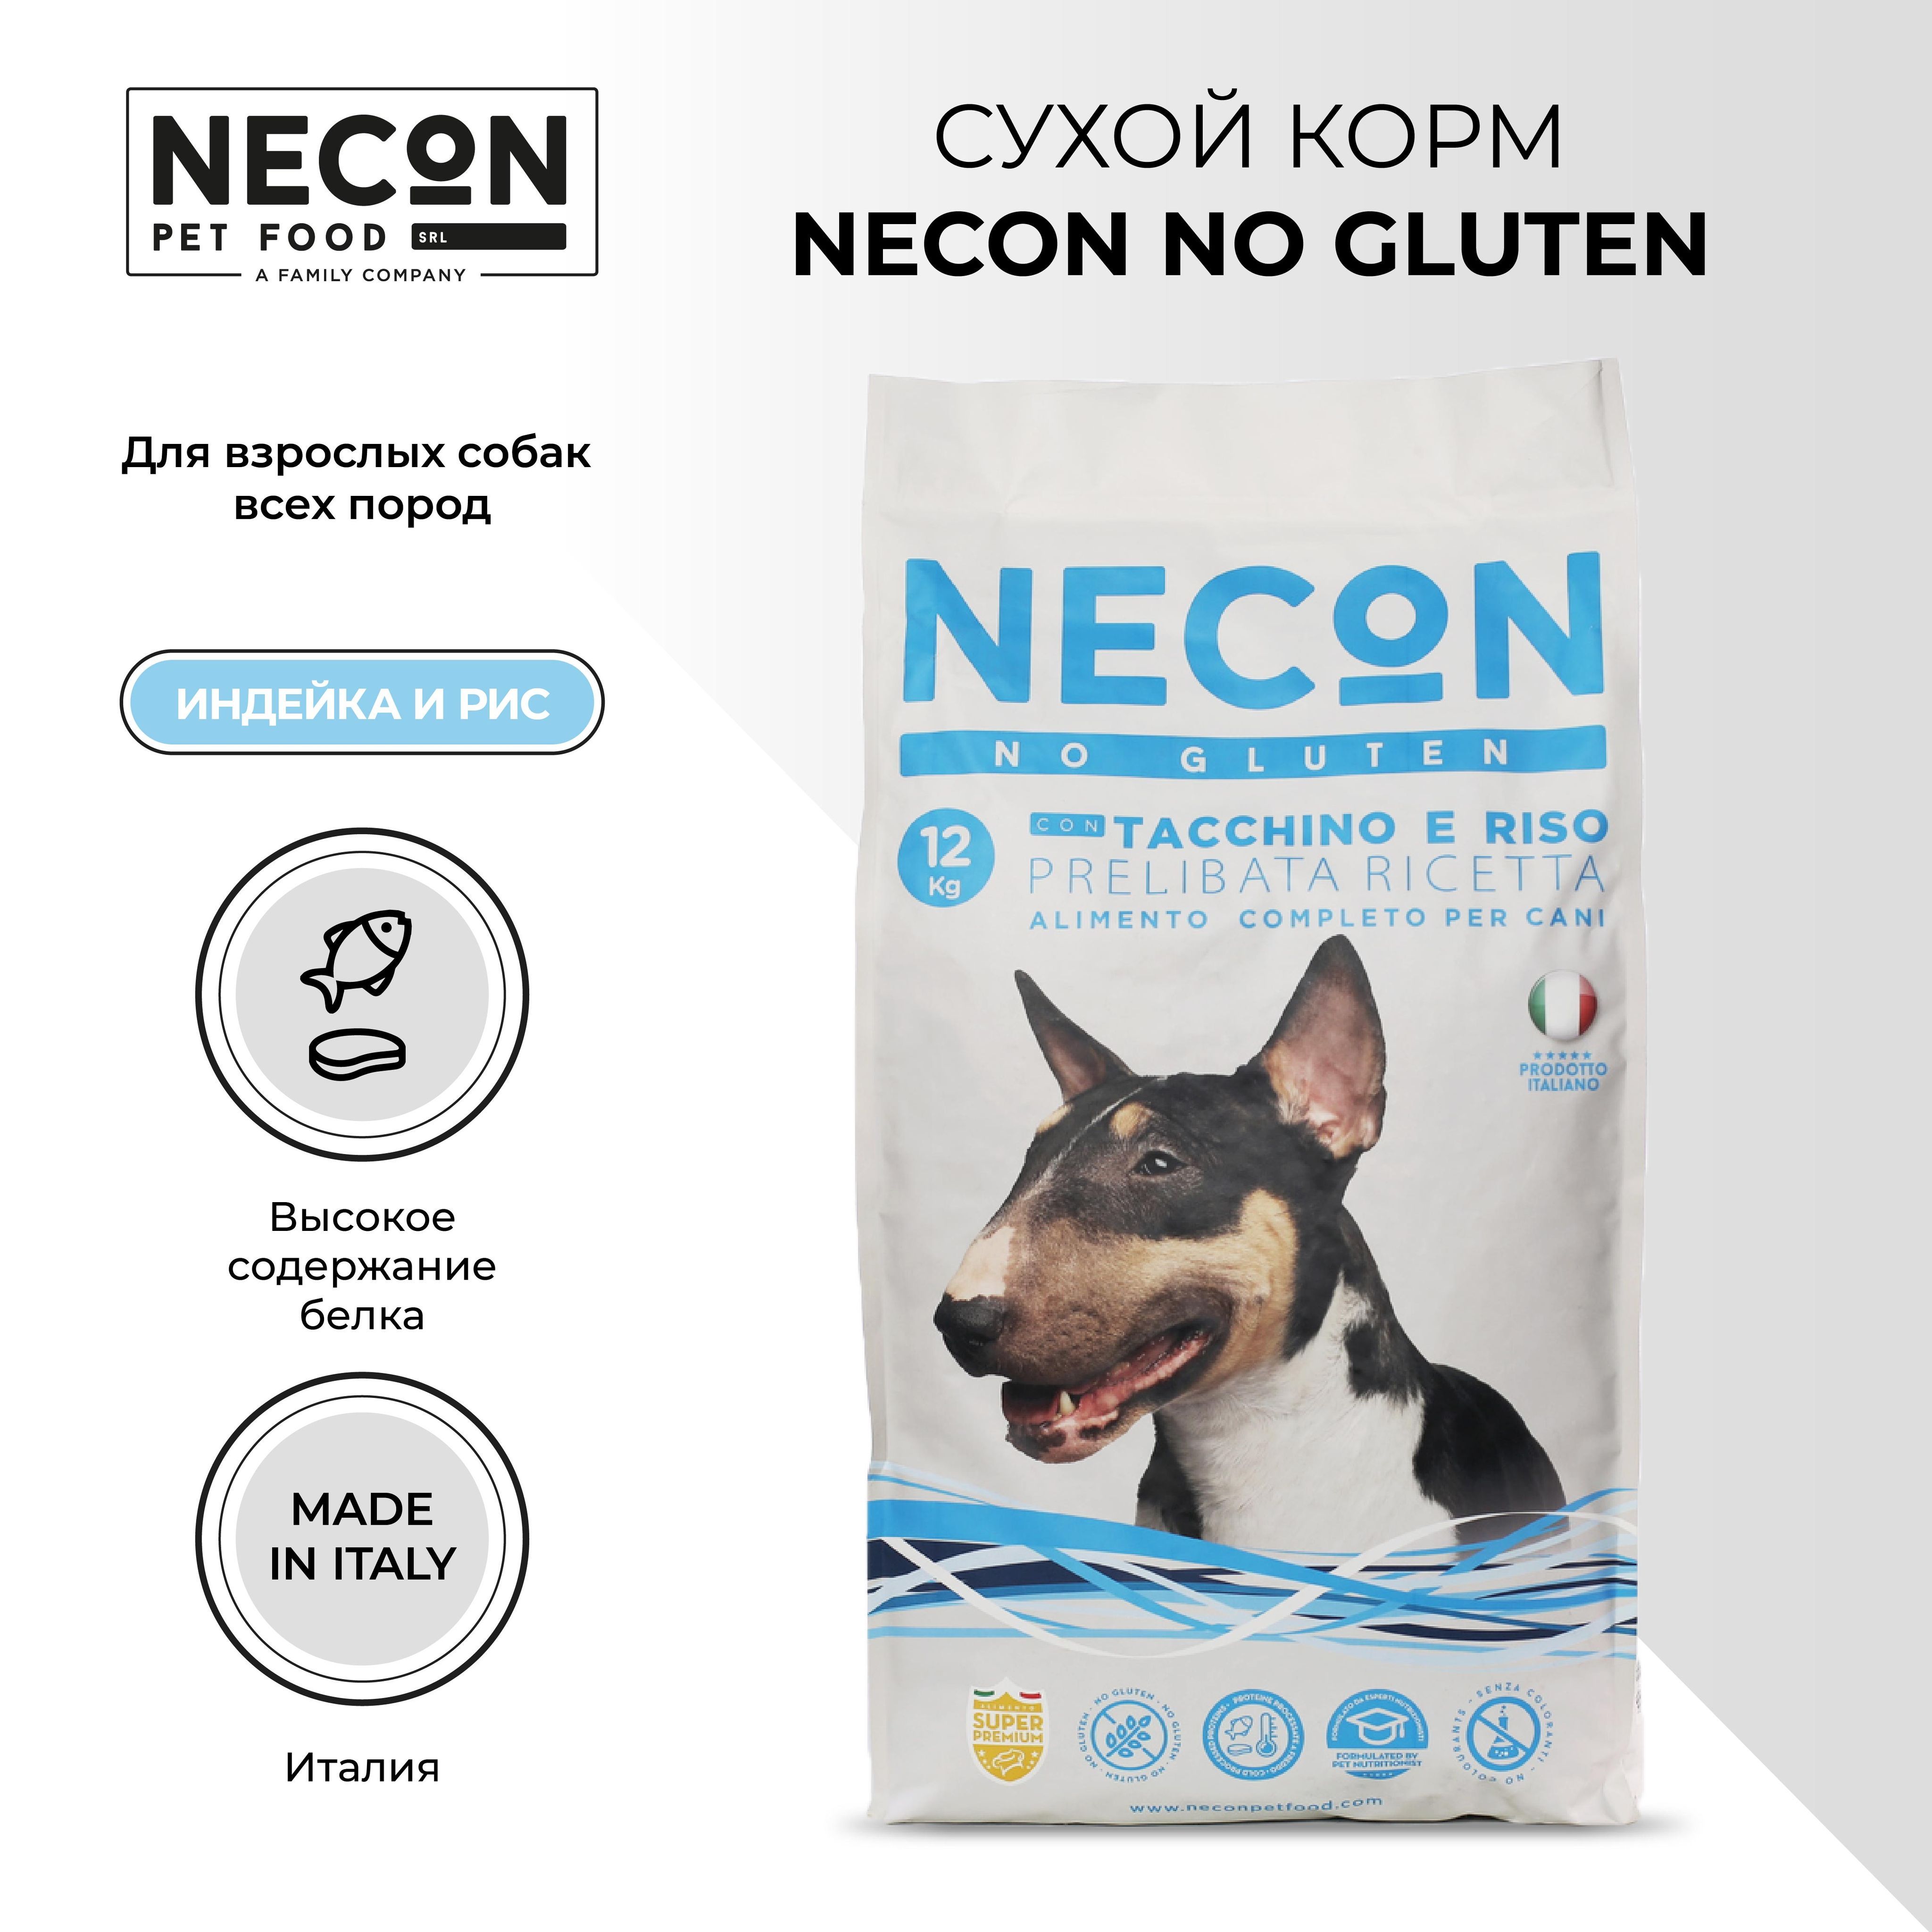 Сухой корм для собак Necon Zero Gluten TacchiZero E Riso, индейка и рис, 12 кг